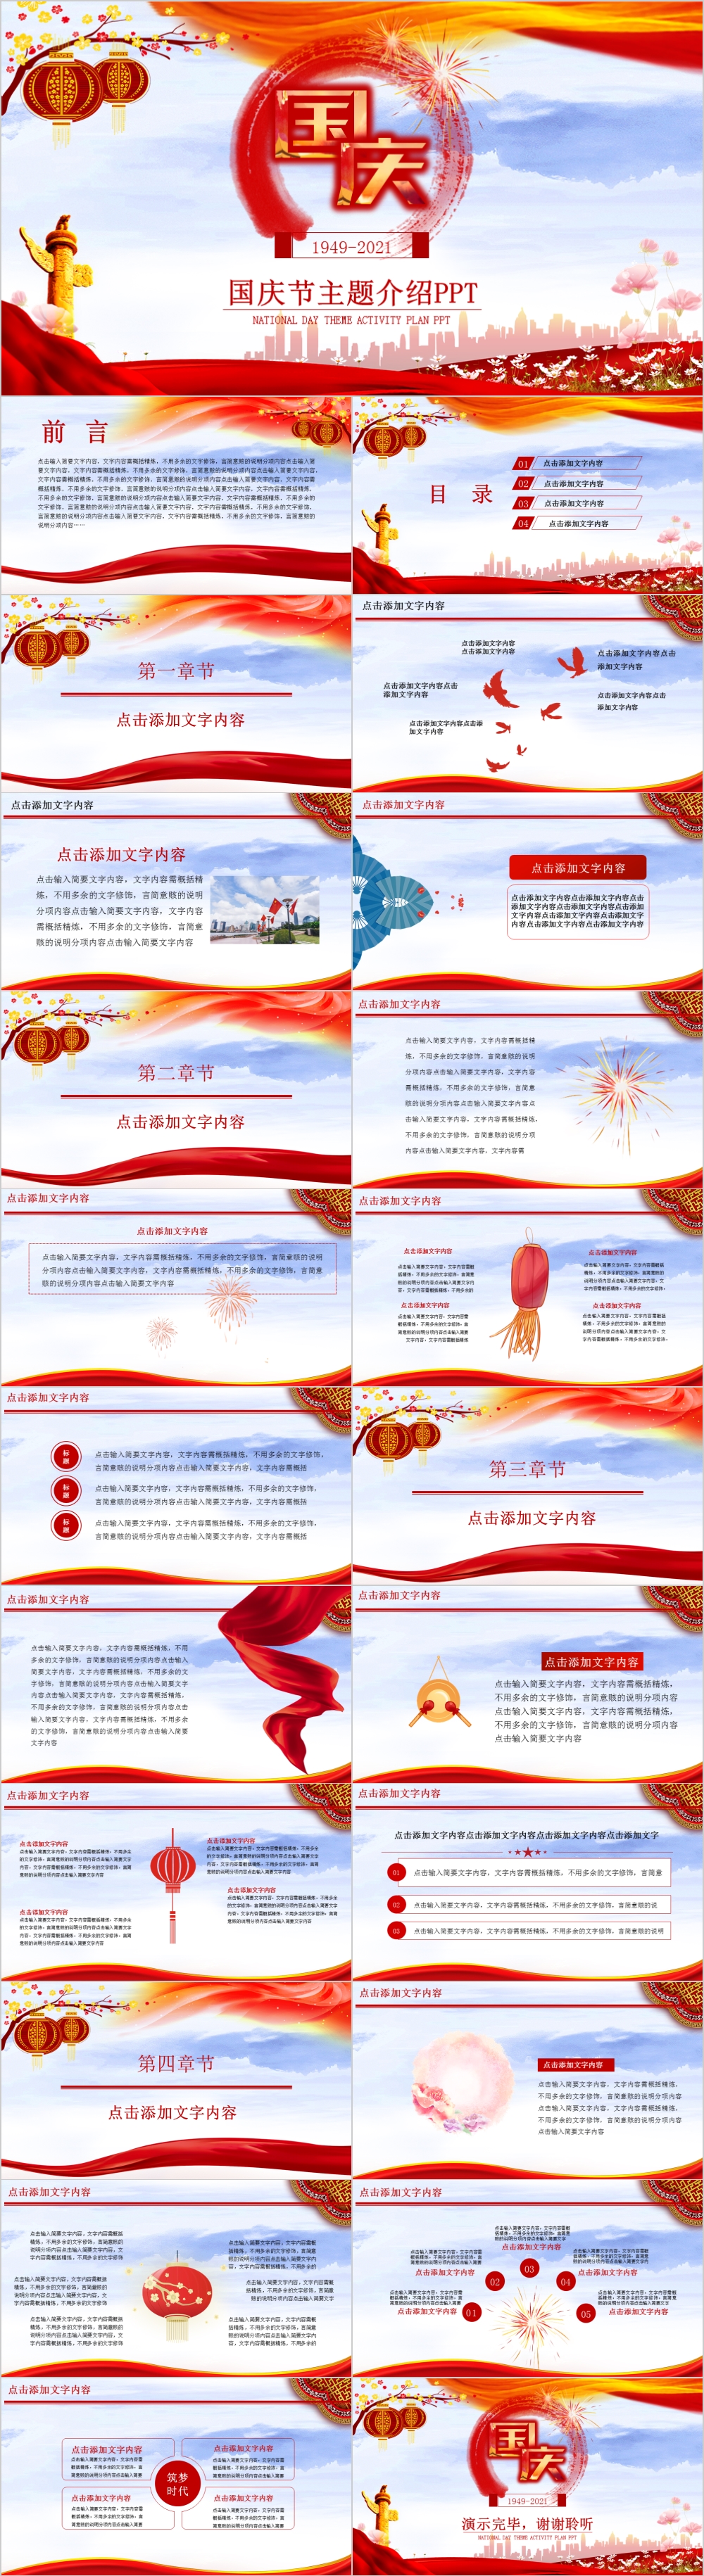 唯美中国风国庆72周年庆典主题介绍PPT模板